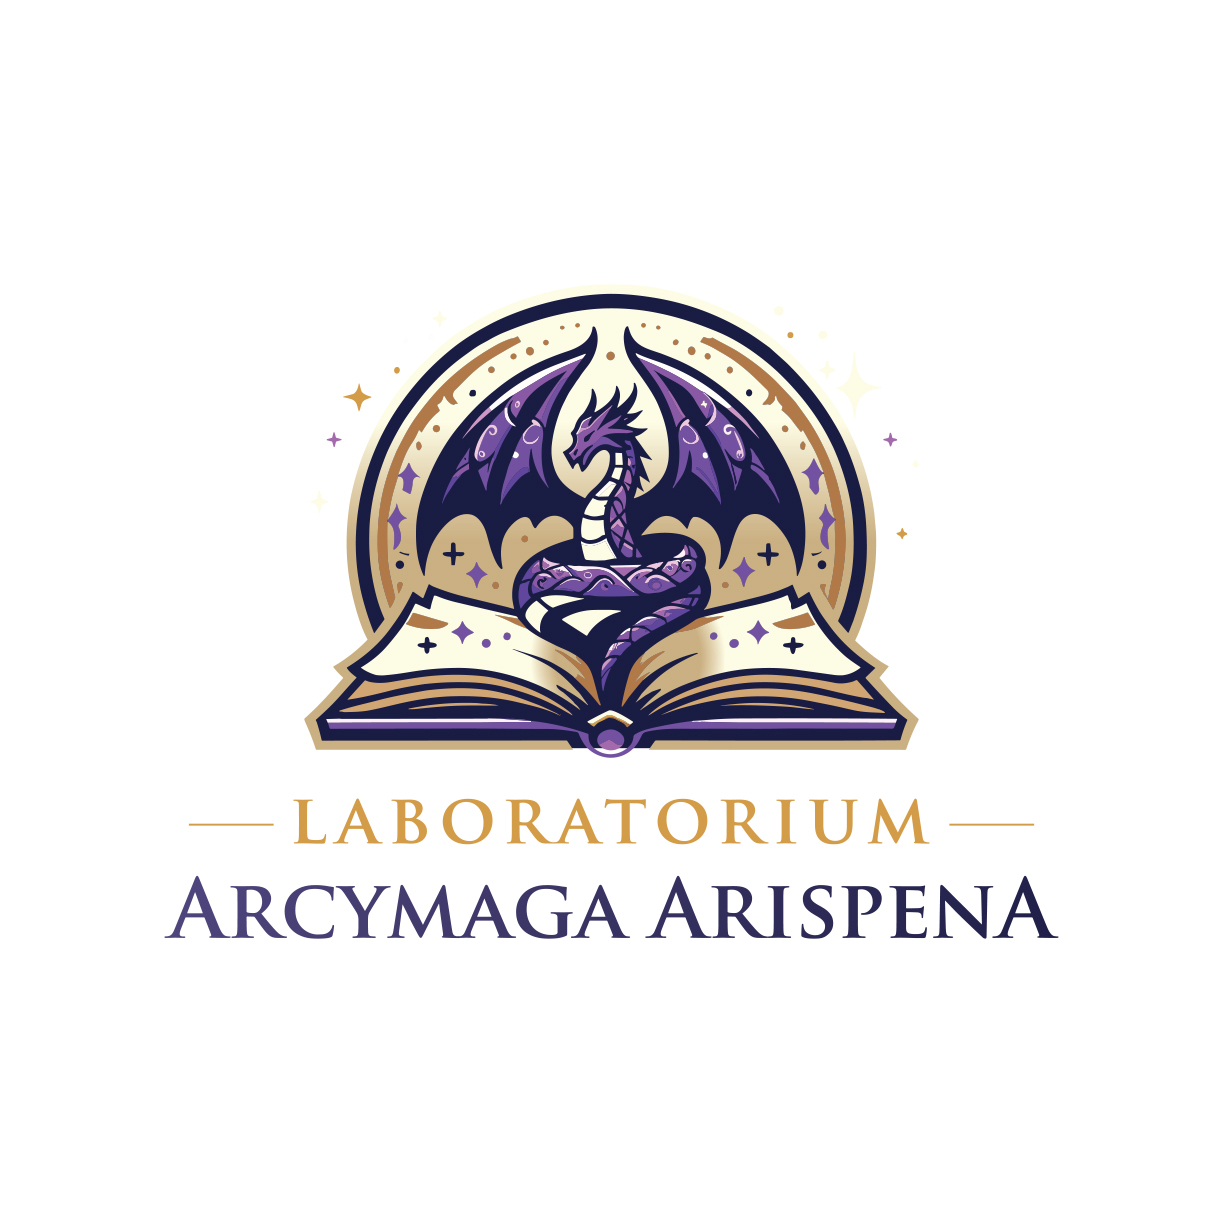 Laboratorium Arcymaga Arispena